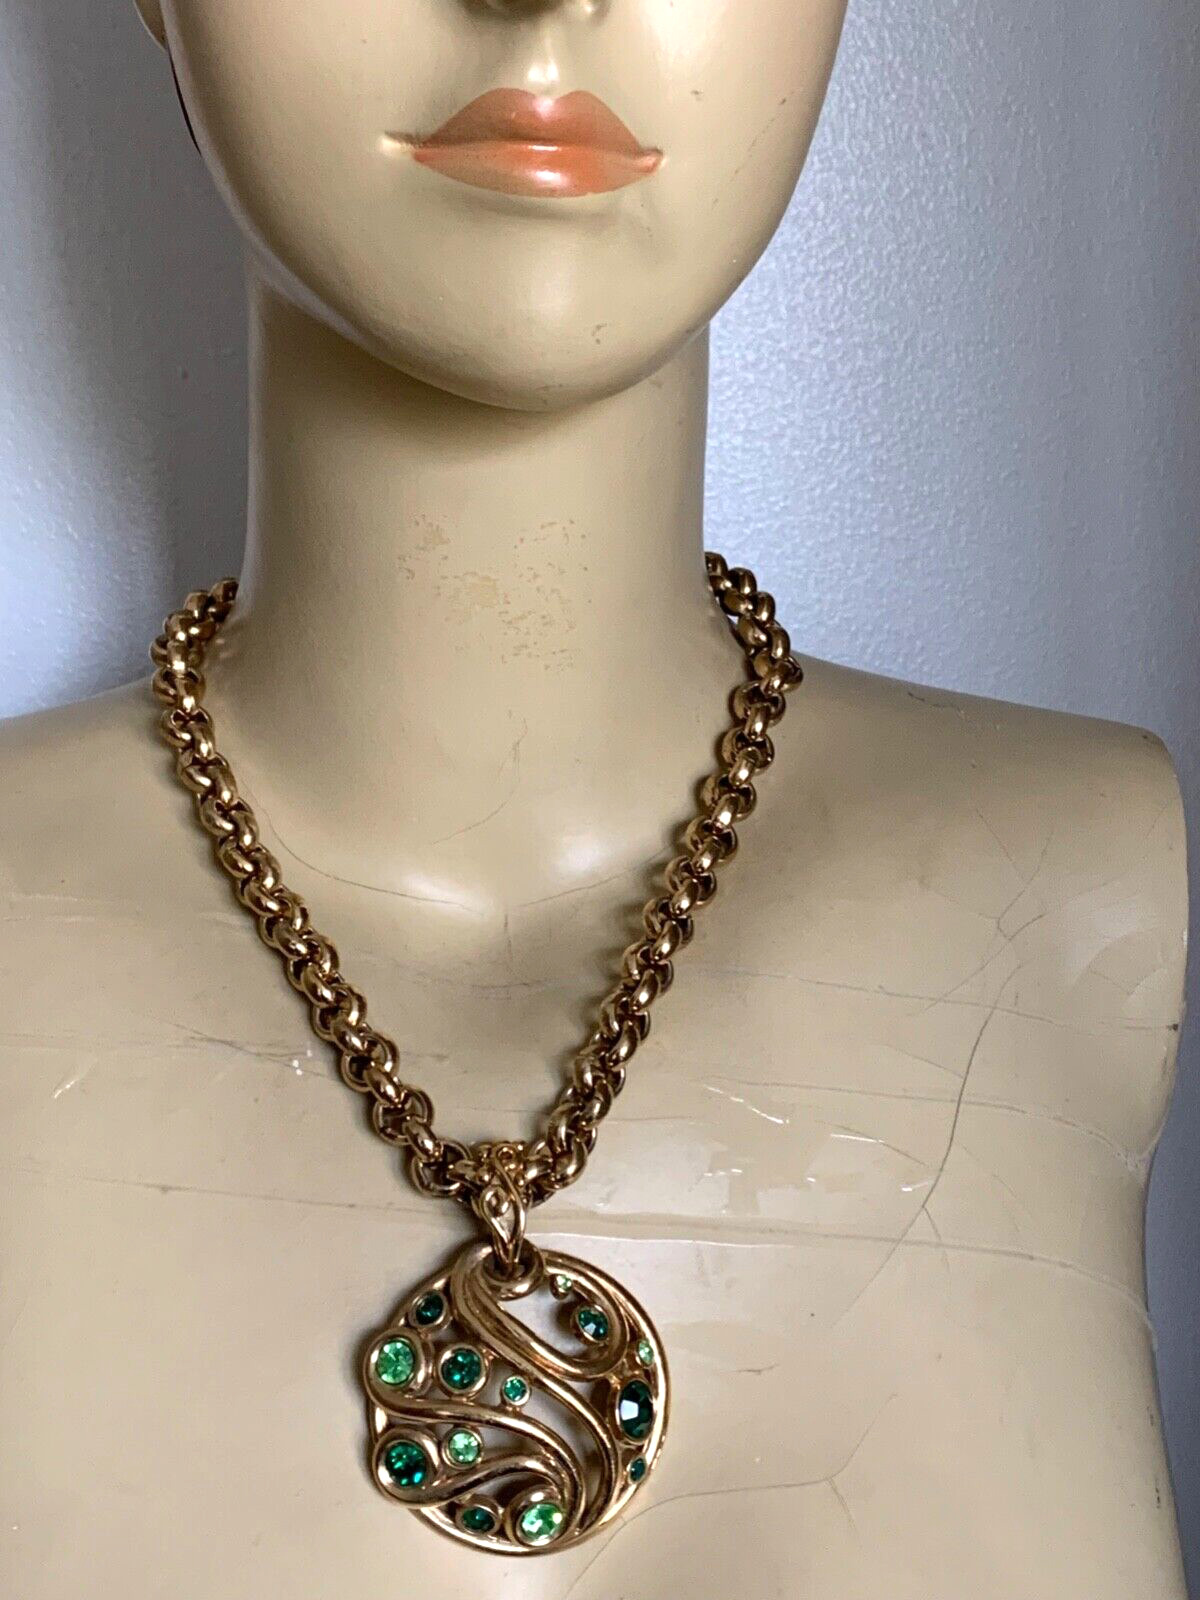 Superb Vintage French Designer Necklace - Signed MOSAIQUE PARIS -Green Crystals